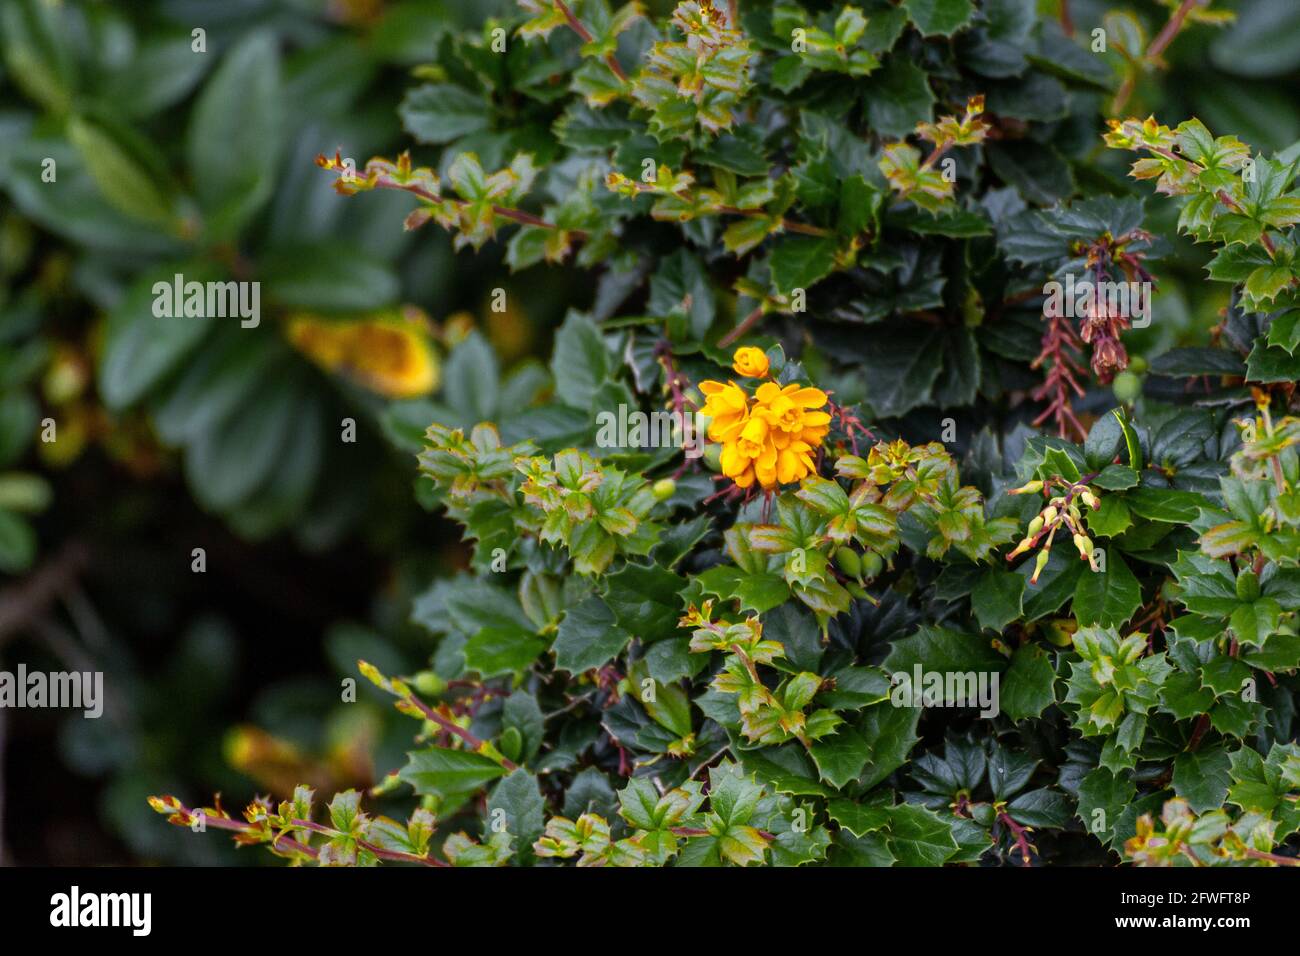 Gros plan d'un groupe de petites fleurs jaunes dans un Bush épineux et vert Banque D'Images